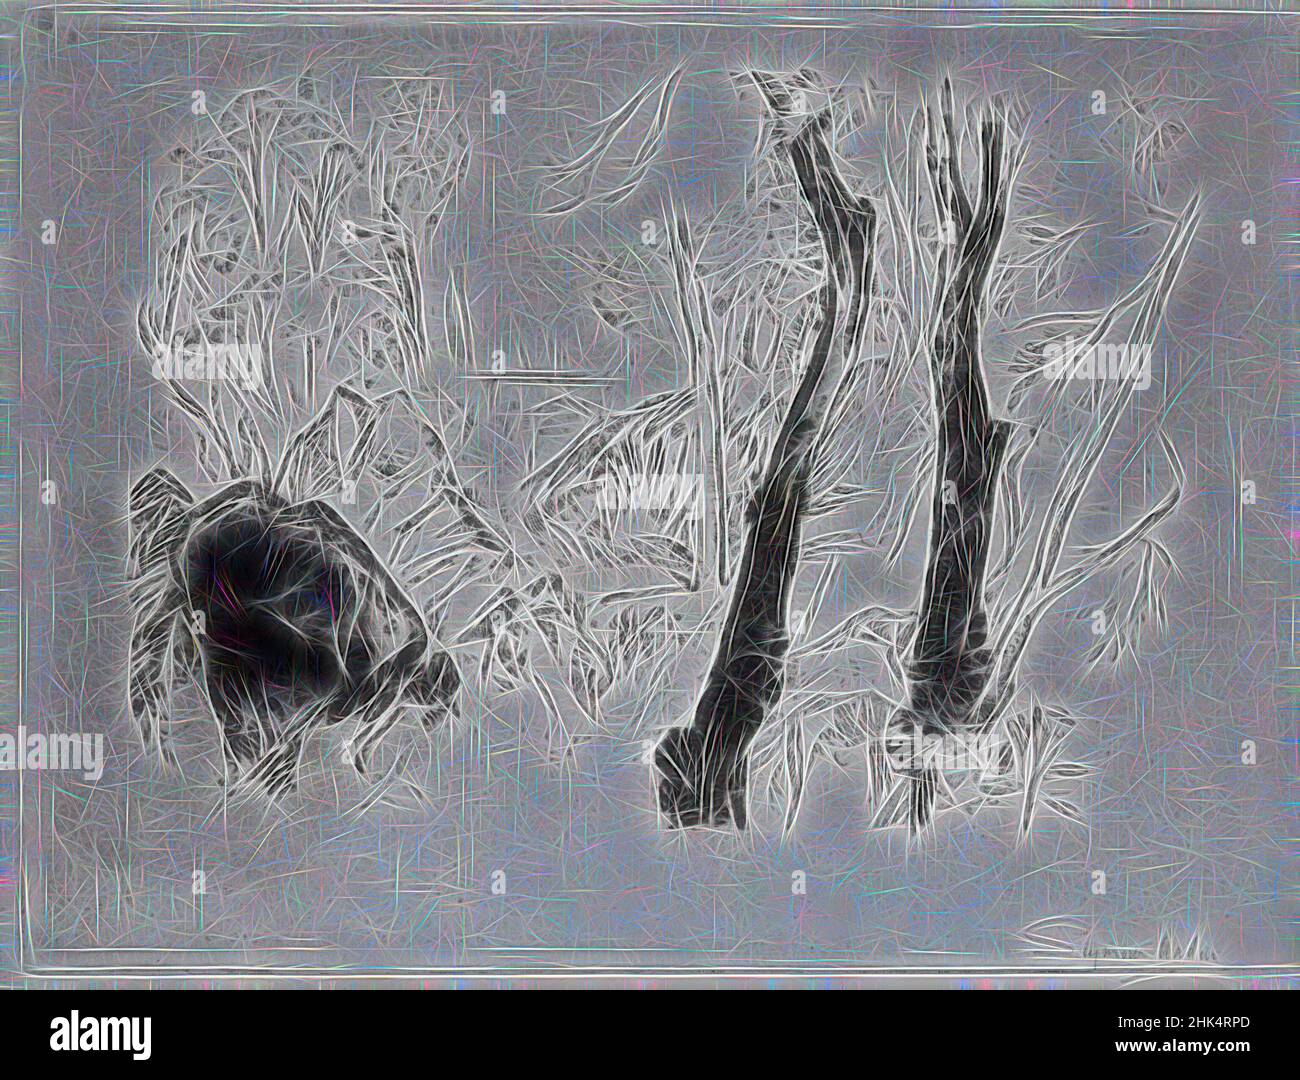 Inspiriert von Near the Crande Chartruese, Seymour Haden, British, 1818-1910, Radchingauf schwerem Wove-Papier, 11 7/16 x 15 1/4 Zoll, 29 x 38,8 cm, Reimagined by Artotop. Klassische Kunst neu erfunden mit einem modernen Twist. Design von warmen fröhlichen Leuchten der Helligkeit und Lichtstrahl Strahlkraft. Fotografie inspiriert von Surrealismus und Futurismus, umarmt dynamische Energie der modernen Technologie, Bewegung, Geschwindigkeit und Kultur zu revolutionieren Stockfoto